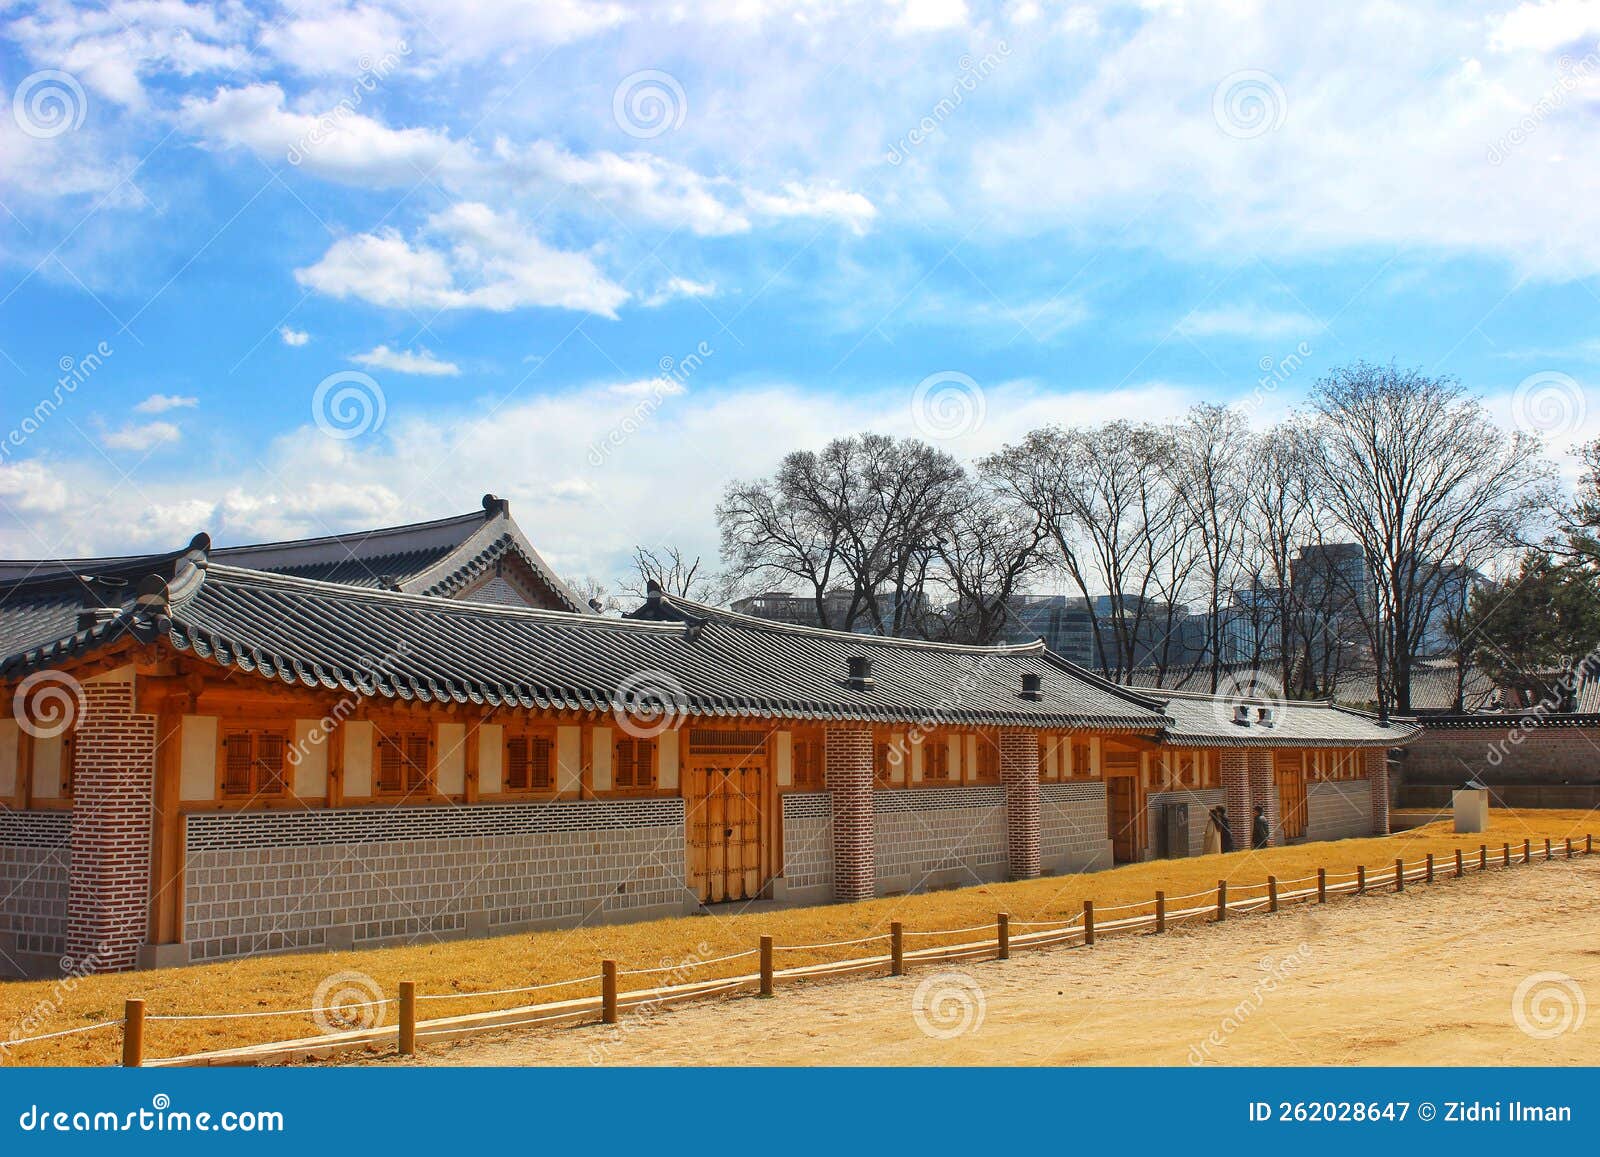 gyeongbokgung palace part 9  southkorea  travelling